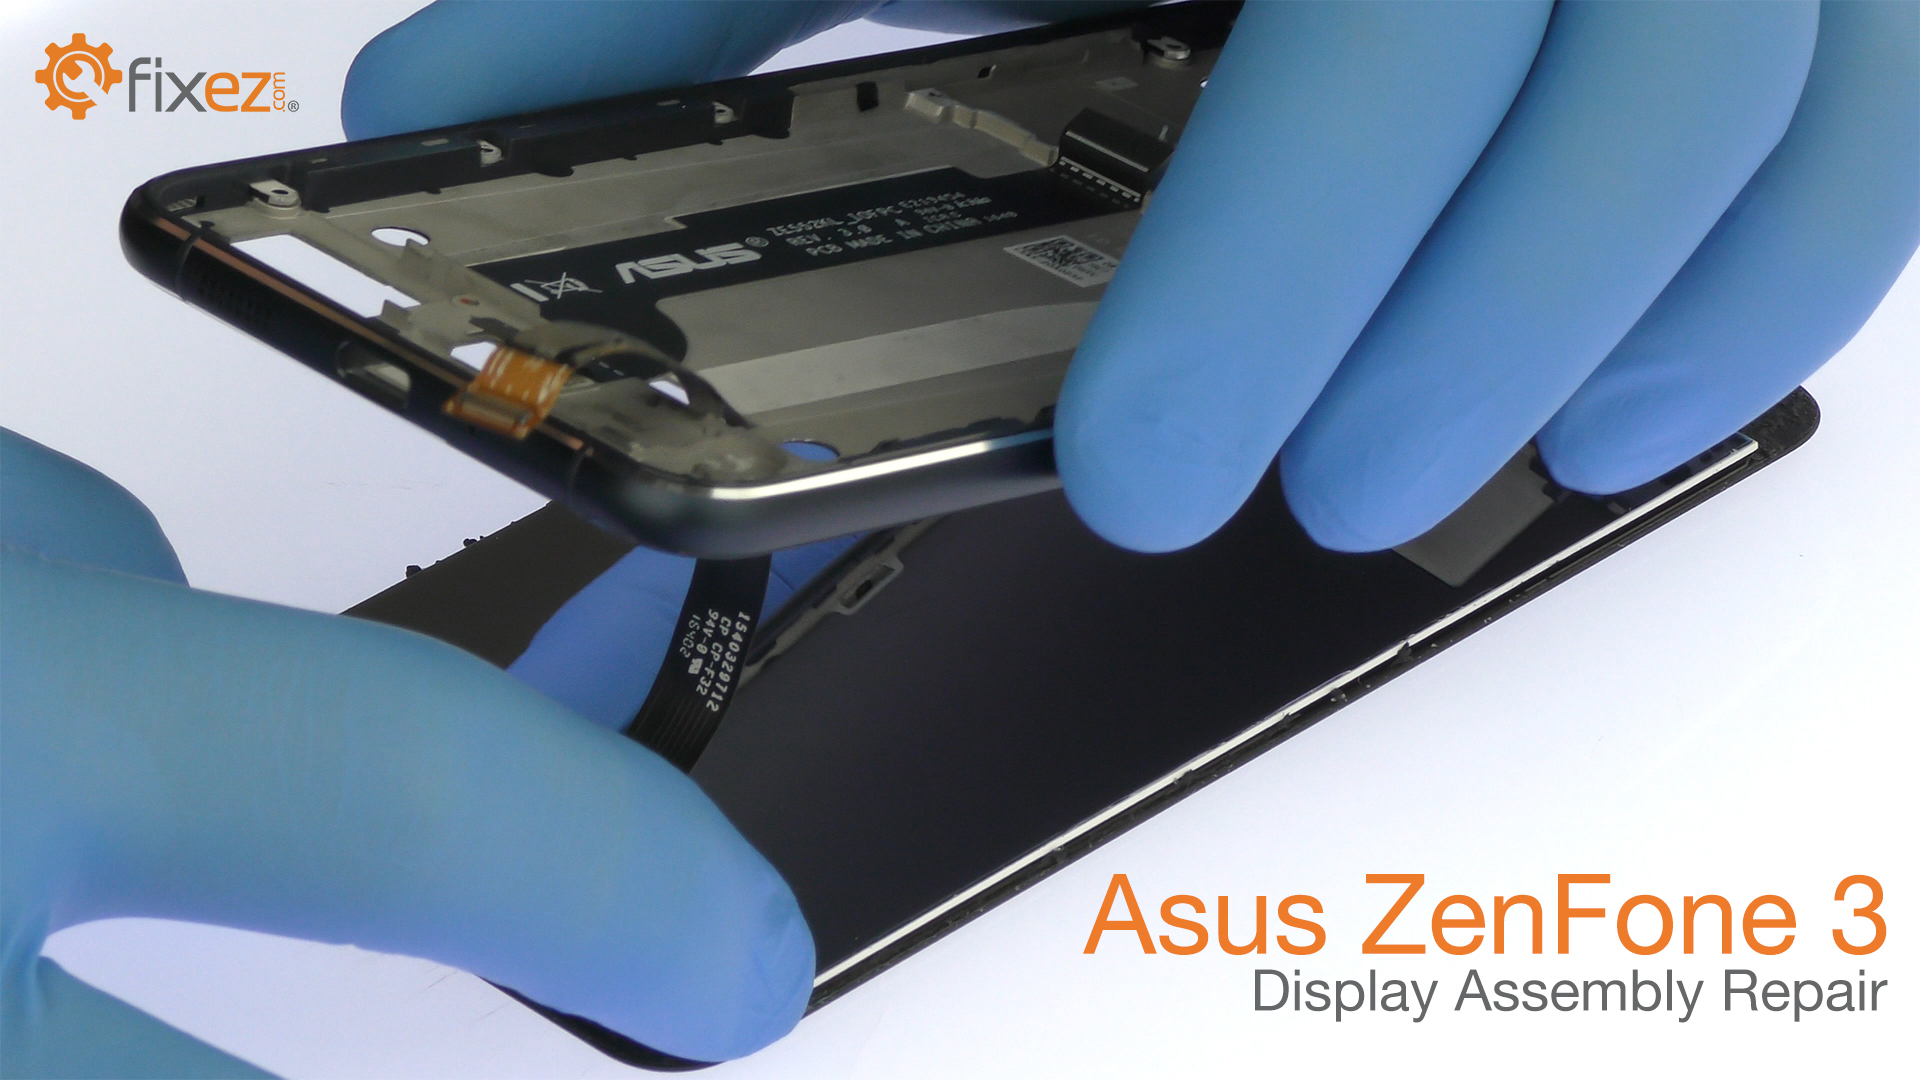 Asus ZenFone 3 Display Assembly Repair